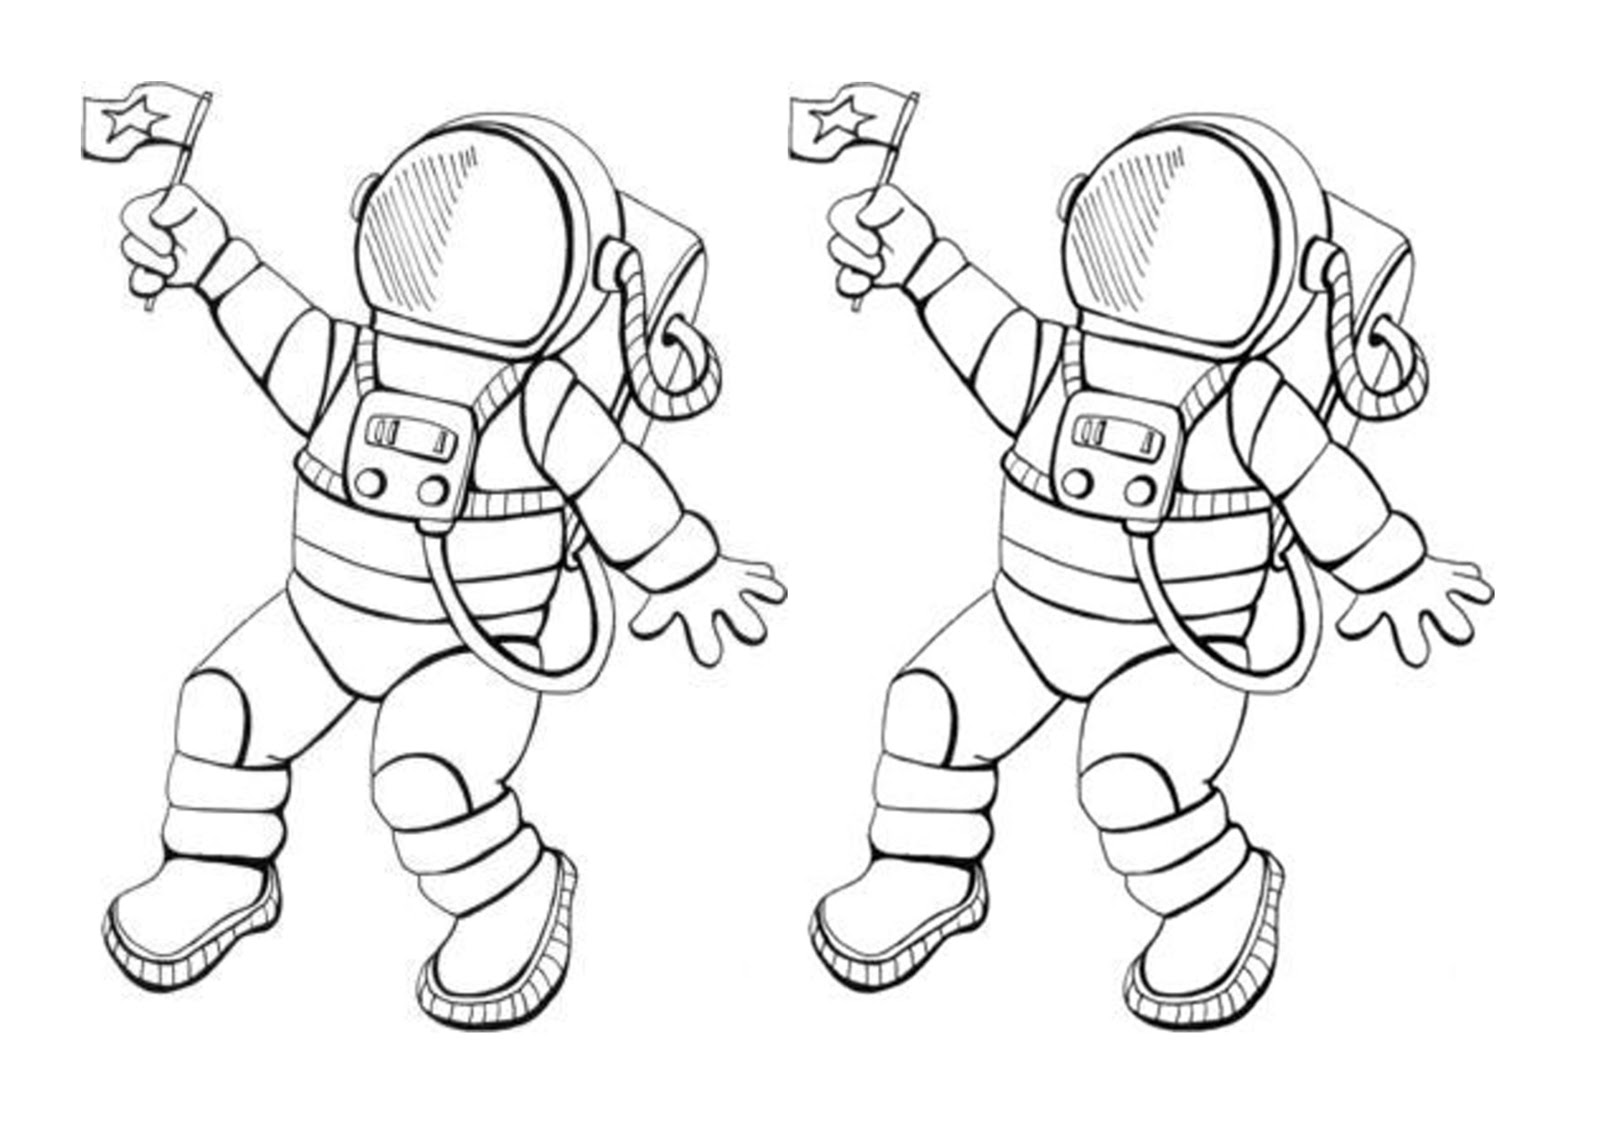 Шаблон космонавта для поделки ко дню космонавтики. Космонавт раскраска для детей. Космонавт картинка для детей раскраска. Космонавт раскраска для малышей. Раскраска Космонавта в скафандре для детей.